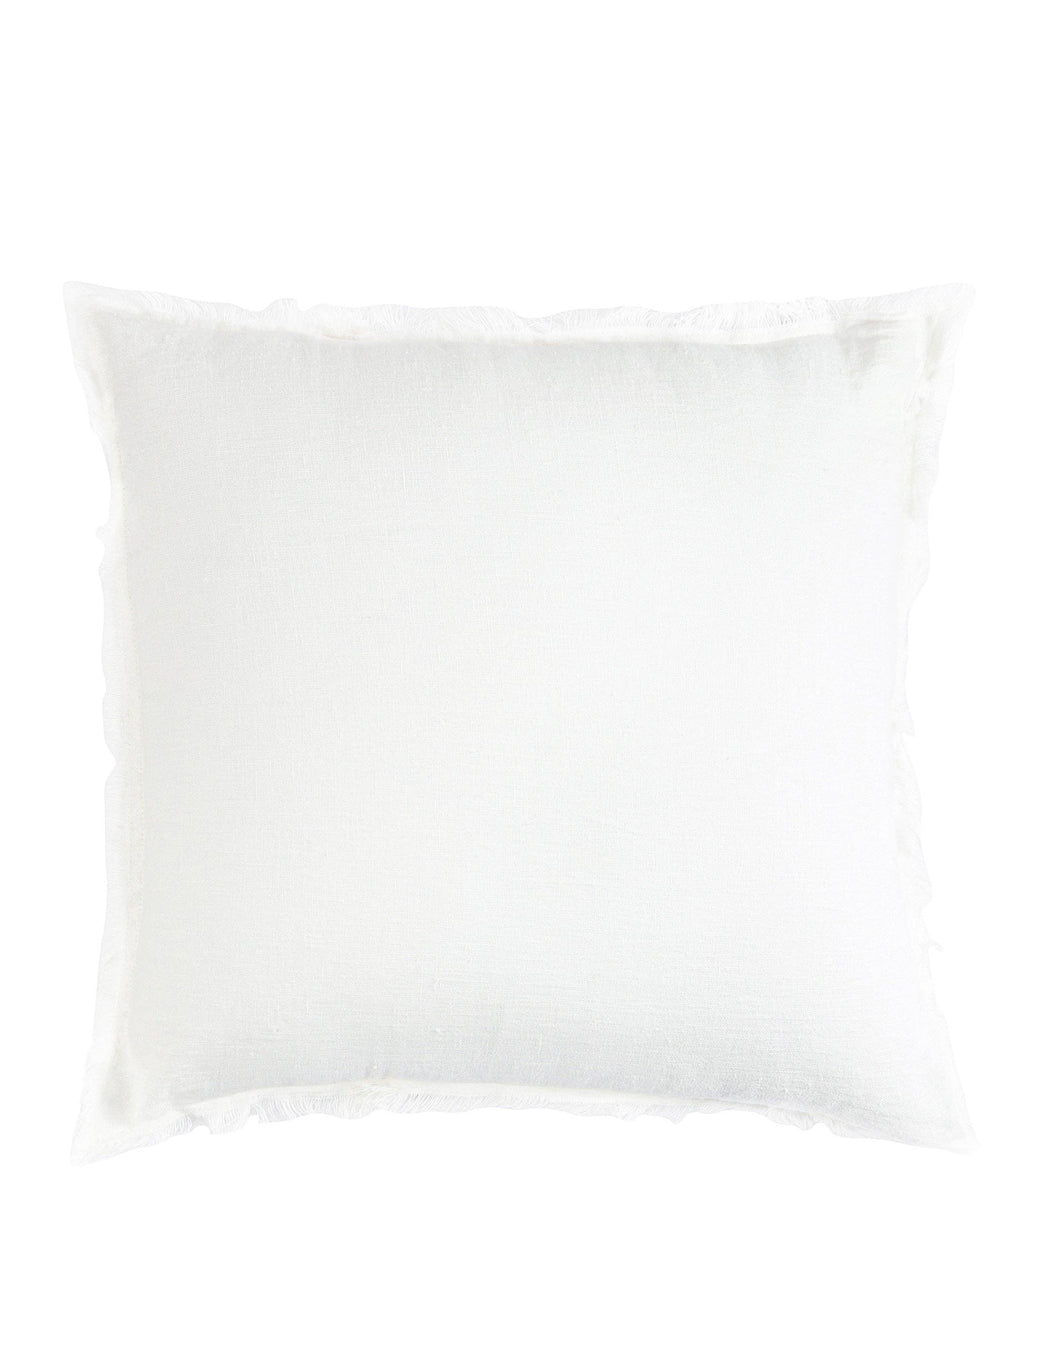 Bright White So Soft Linen Pillow-26x26”